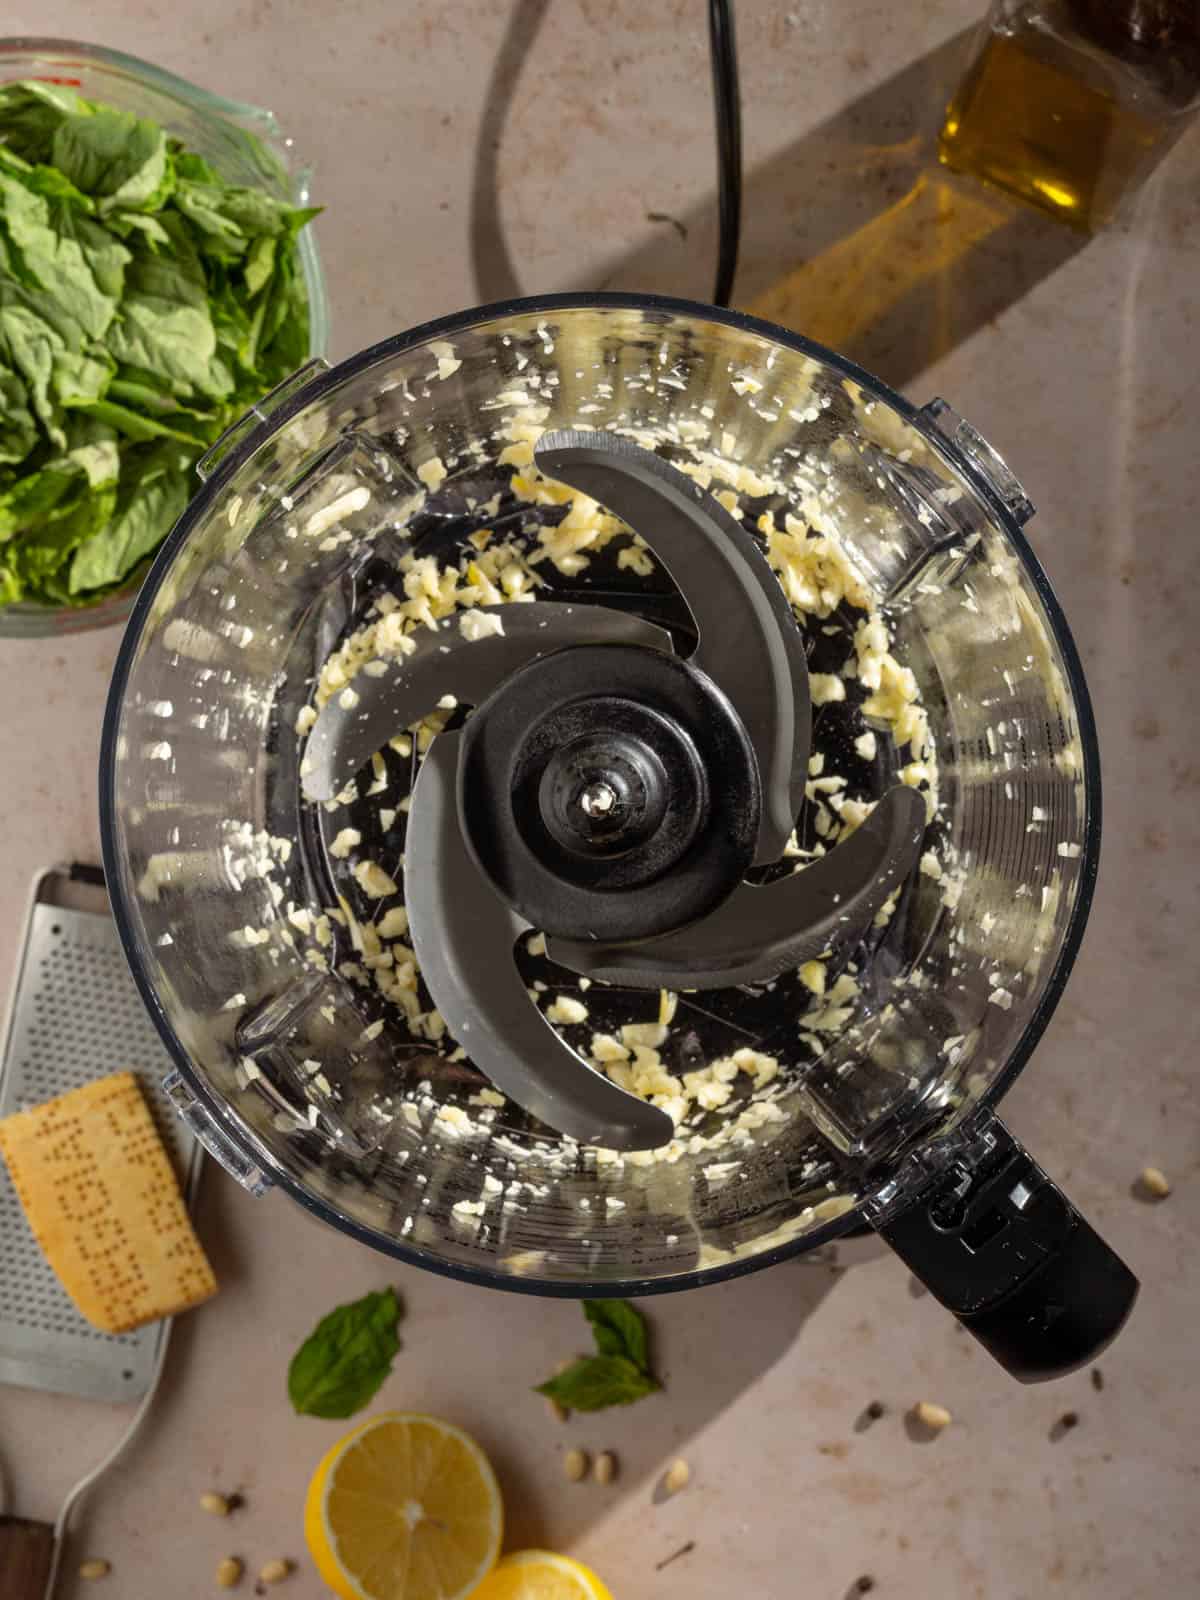 Chopped garlic in a food processor.